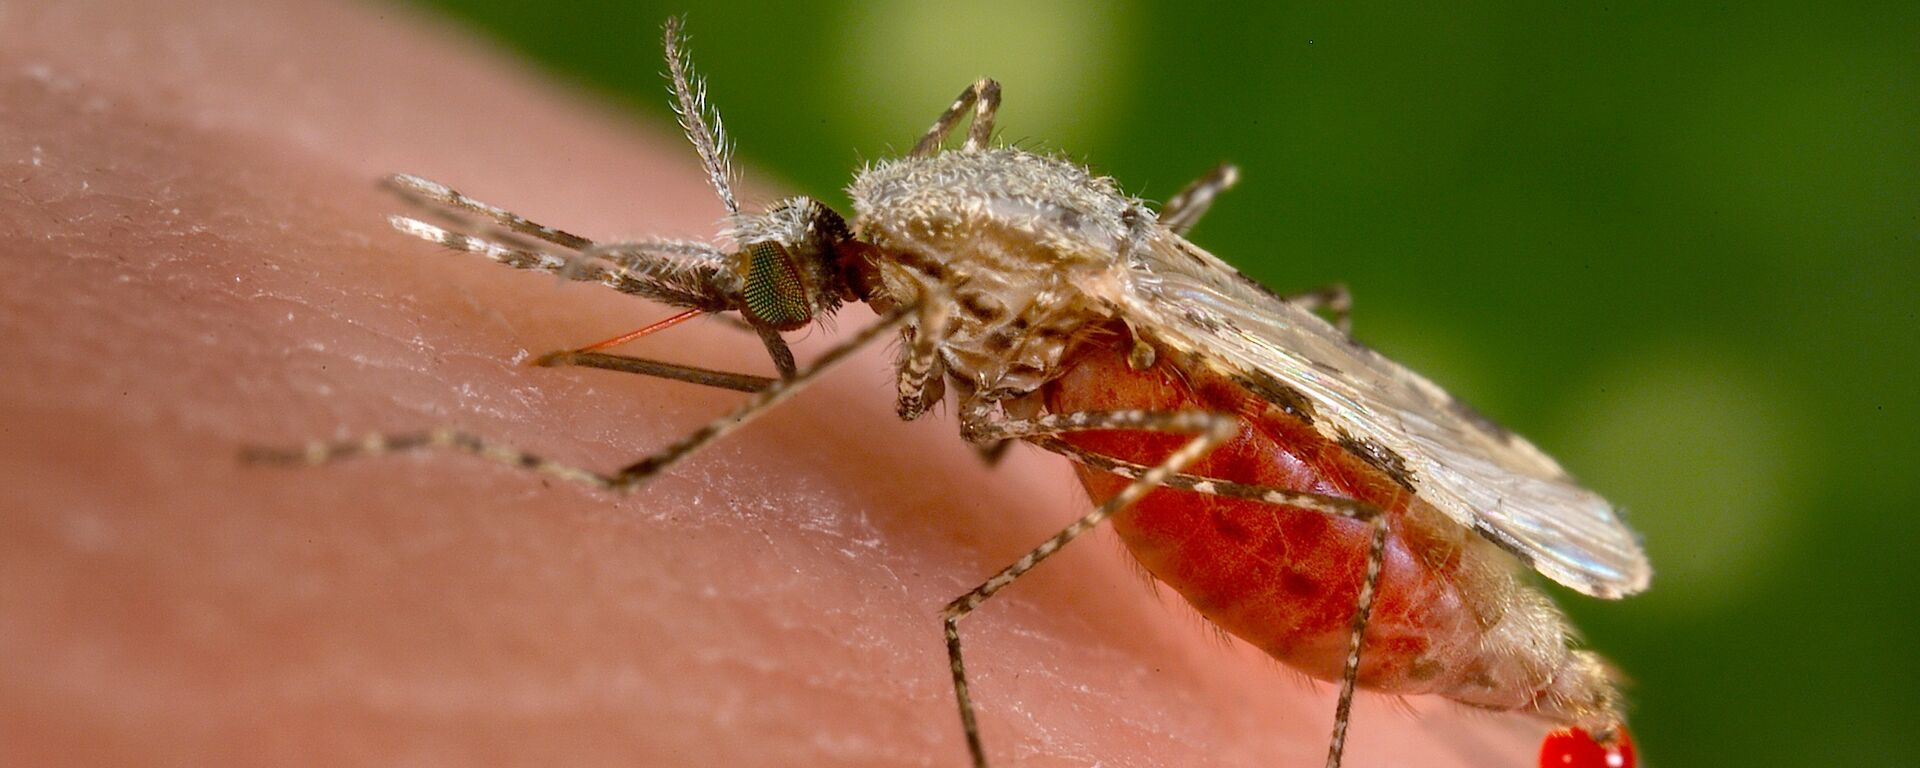 El mosquito Anopheles stephensi es el responsable de trasmitir la malaria a los humanos - Sputnik Mundo, 1920, 16.06.2022